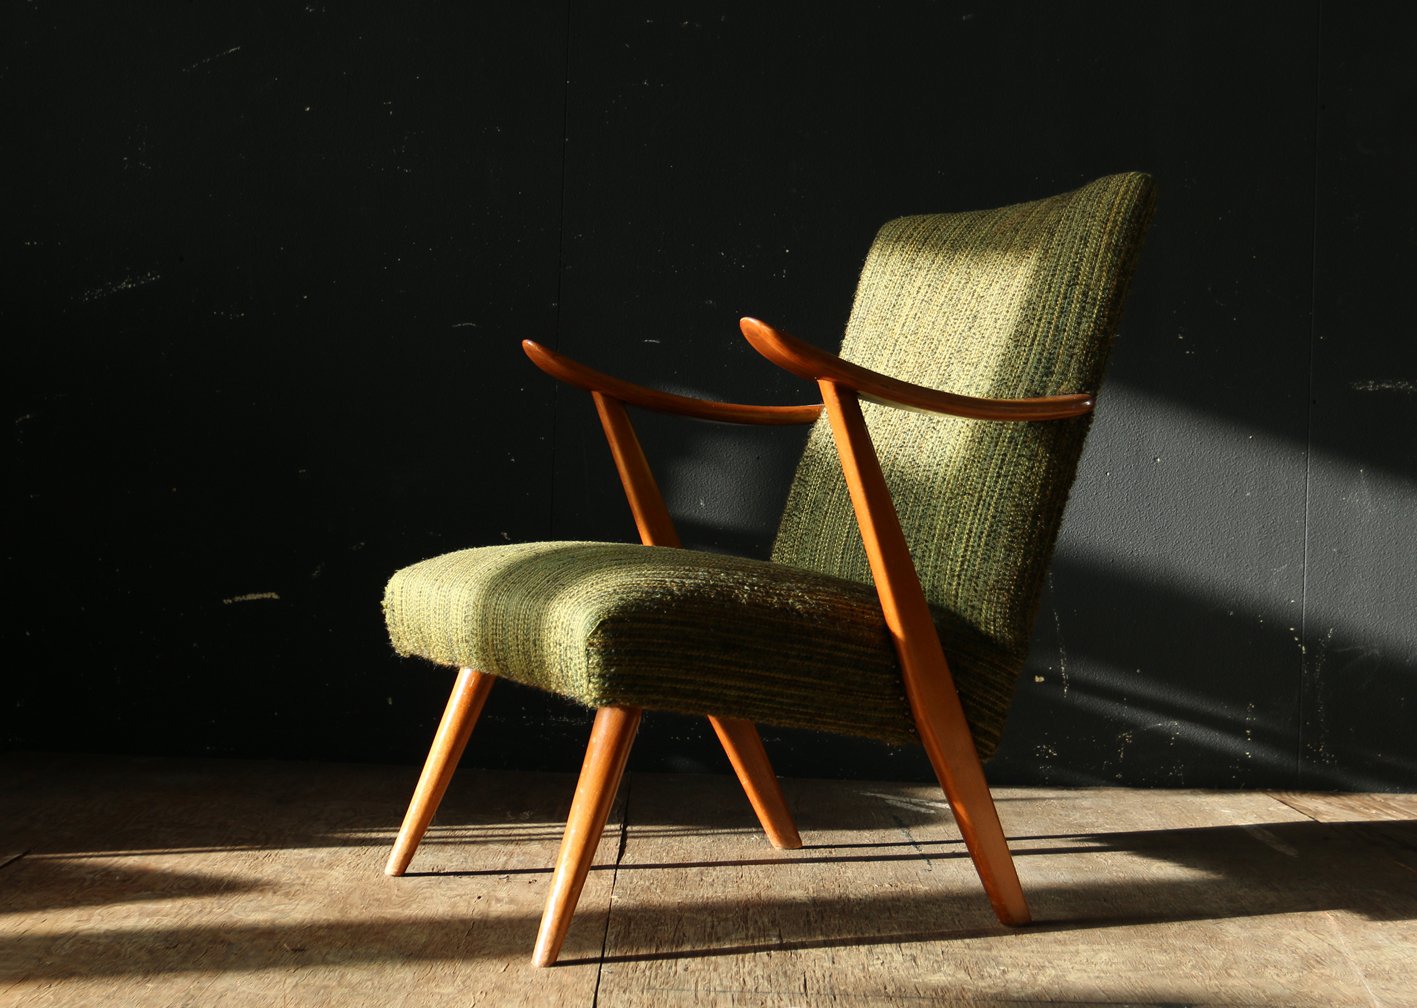 Bloeden shit Retentie De Huiszwaluw on Twitter: "Top #Deens #Vintage Design Groen en teakhout  fauteuil jaren 60 #Dehuiszwaluw https://t.co/ptXHEnuP2L  https://t.co/OVREFgaiS1" / Twitter